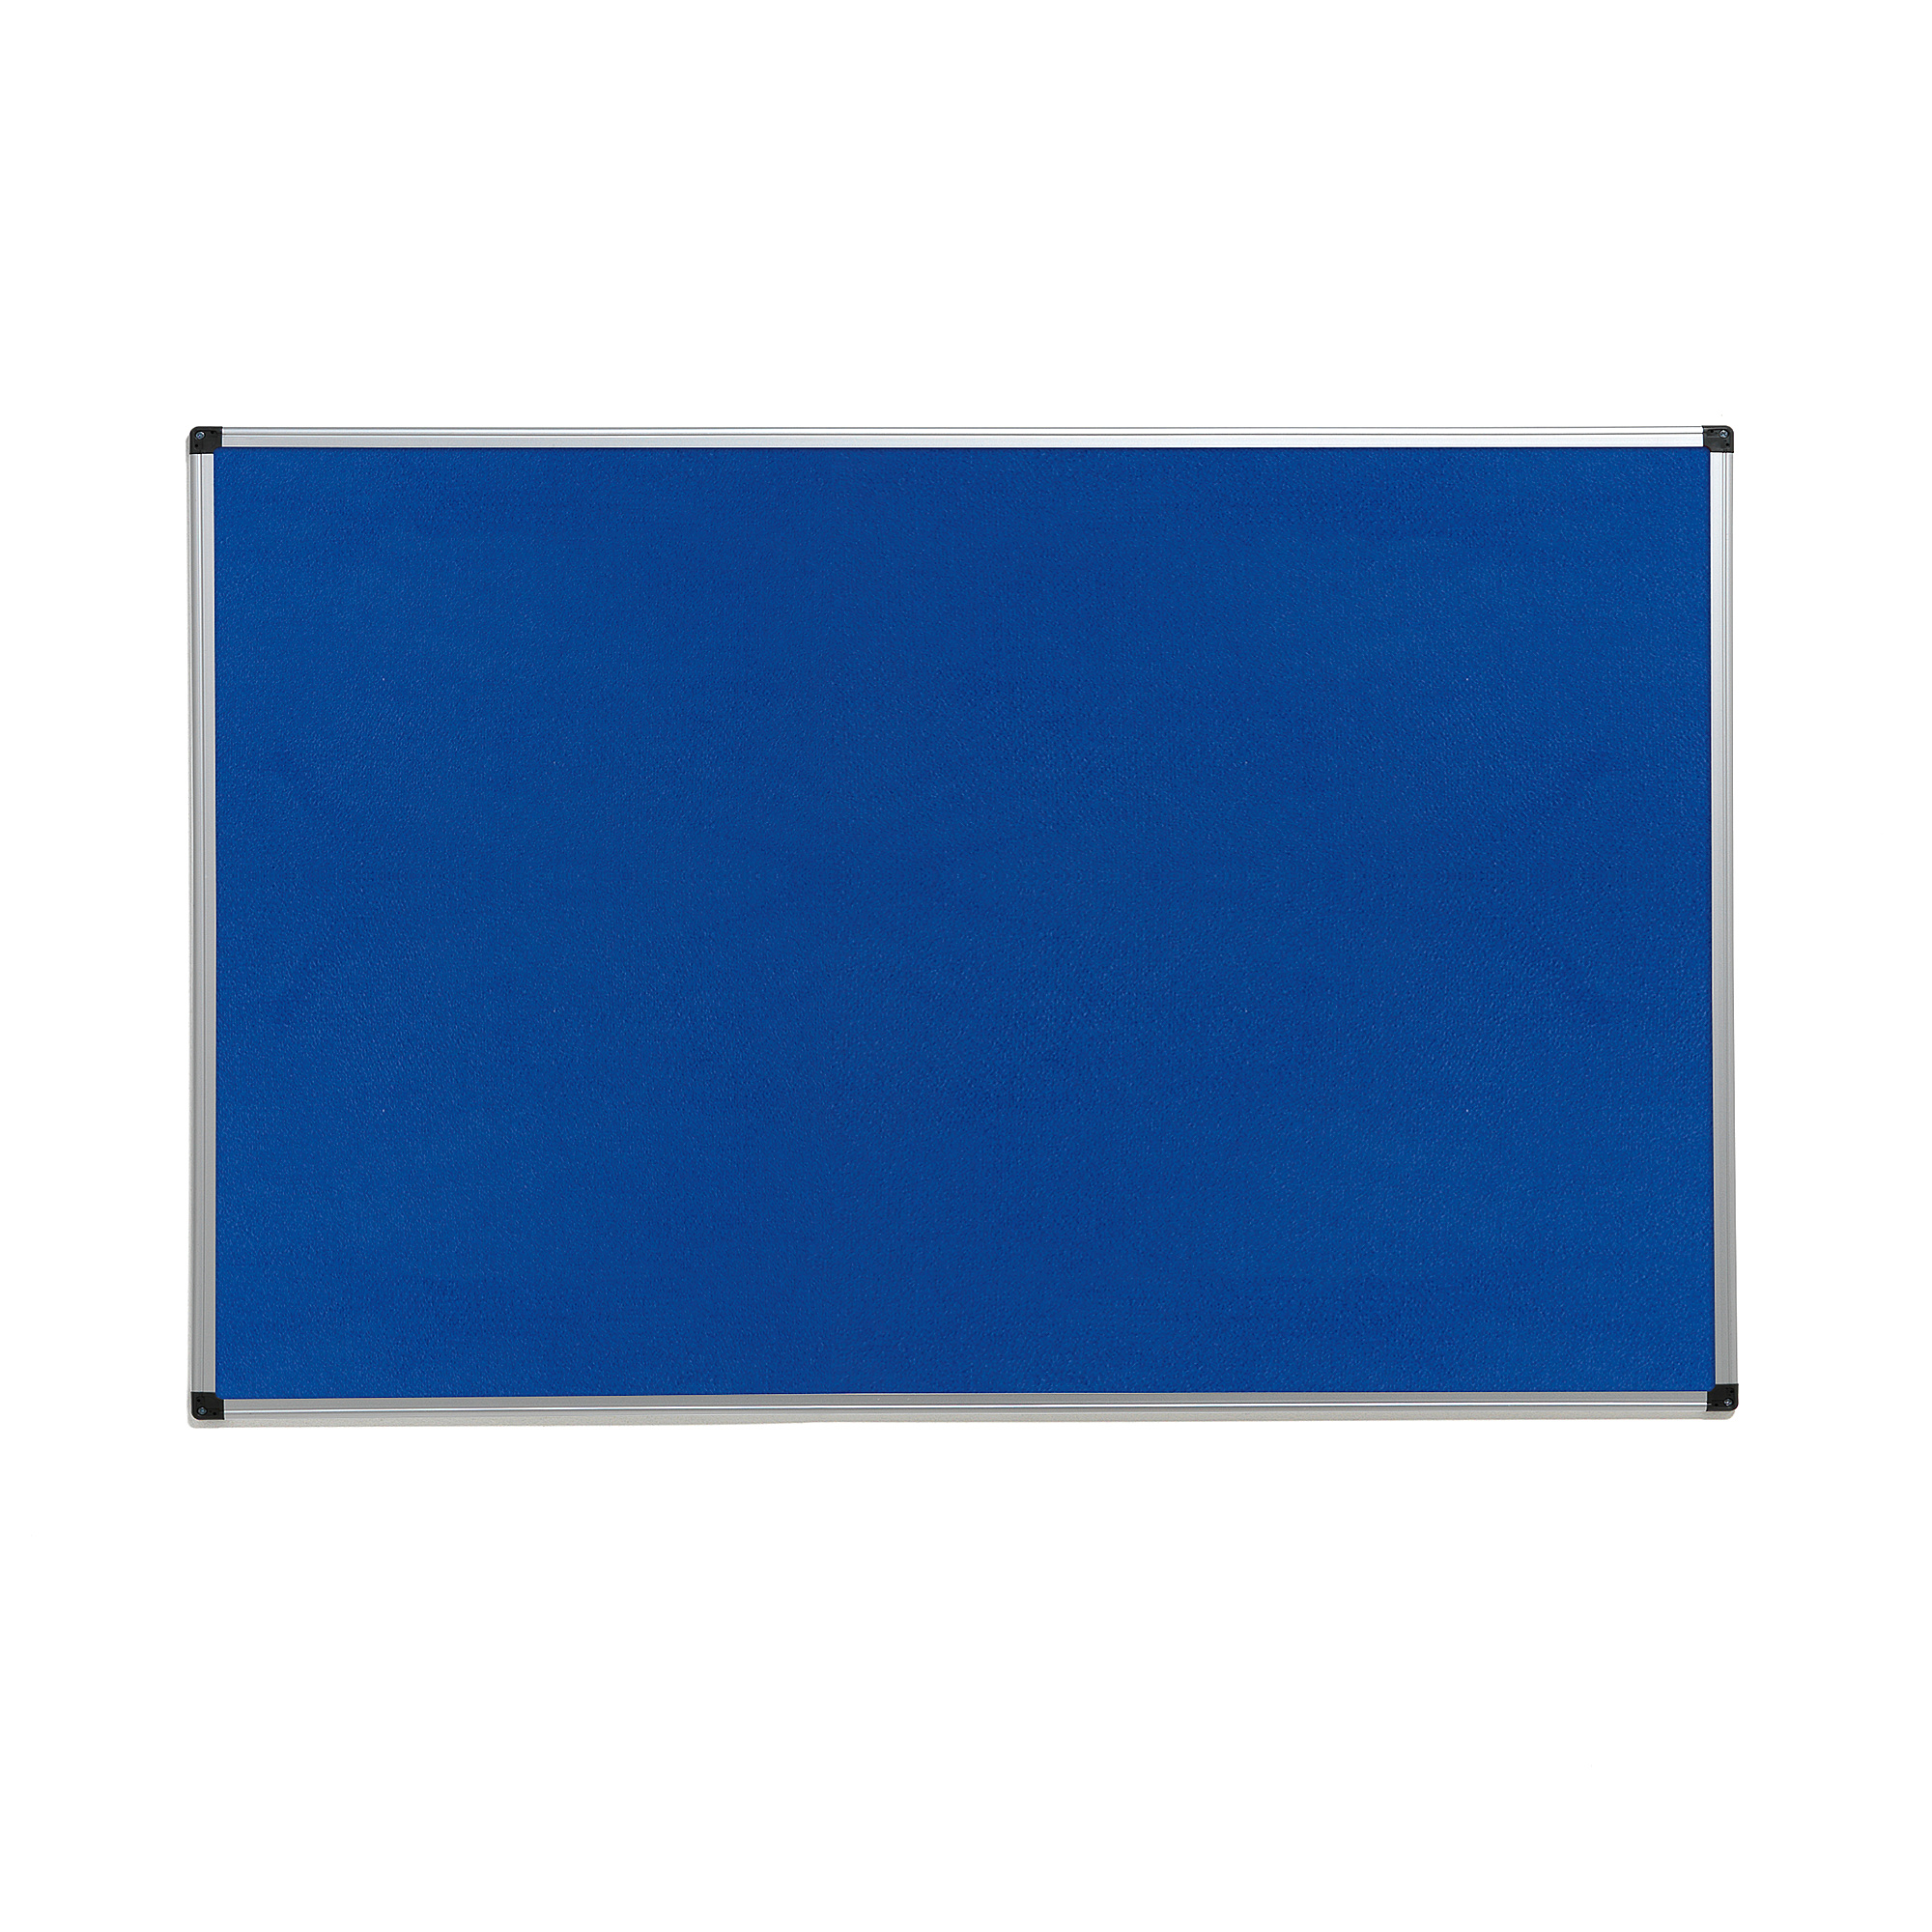 Nástěnka MARIA, 2000x1200 mm, modrá, hliníkový rám